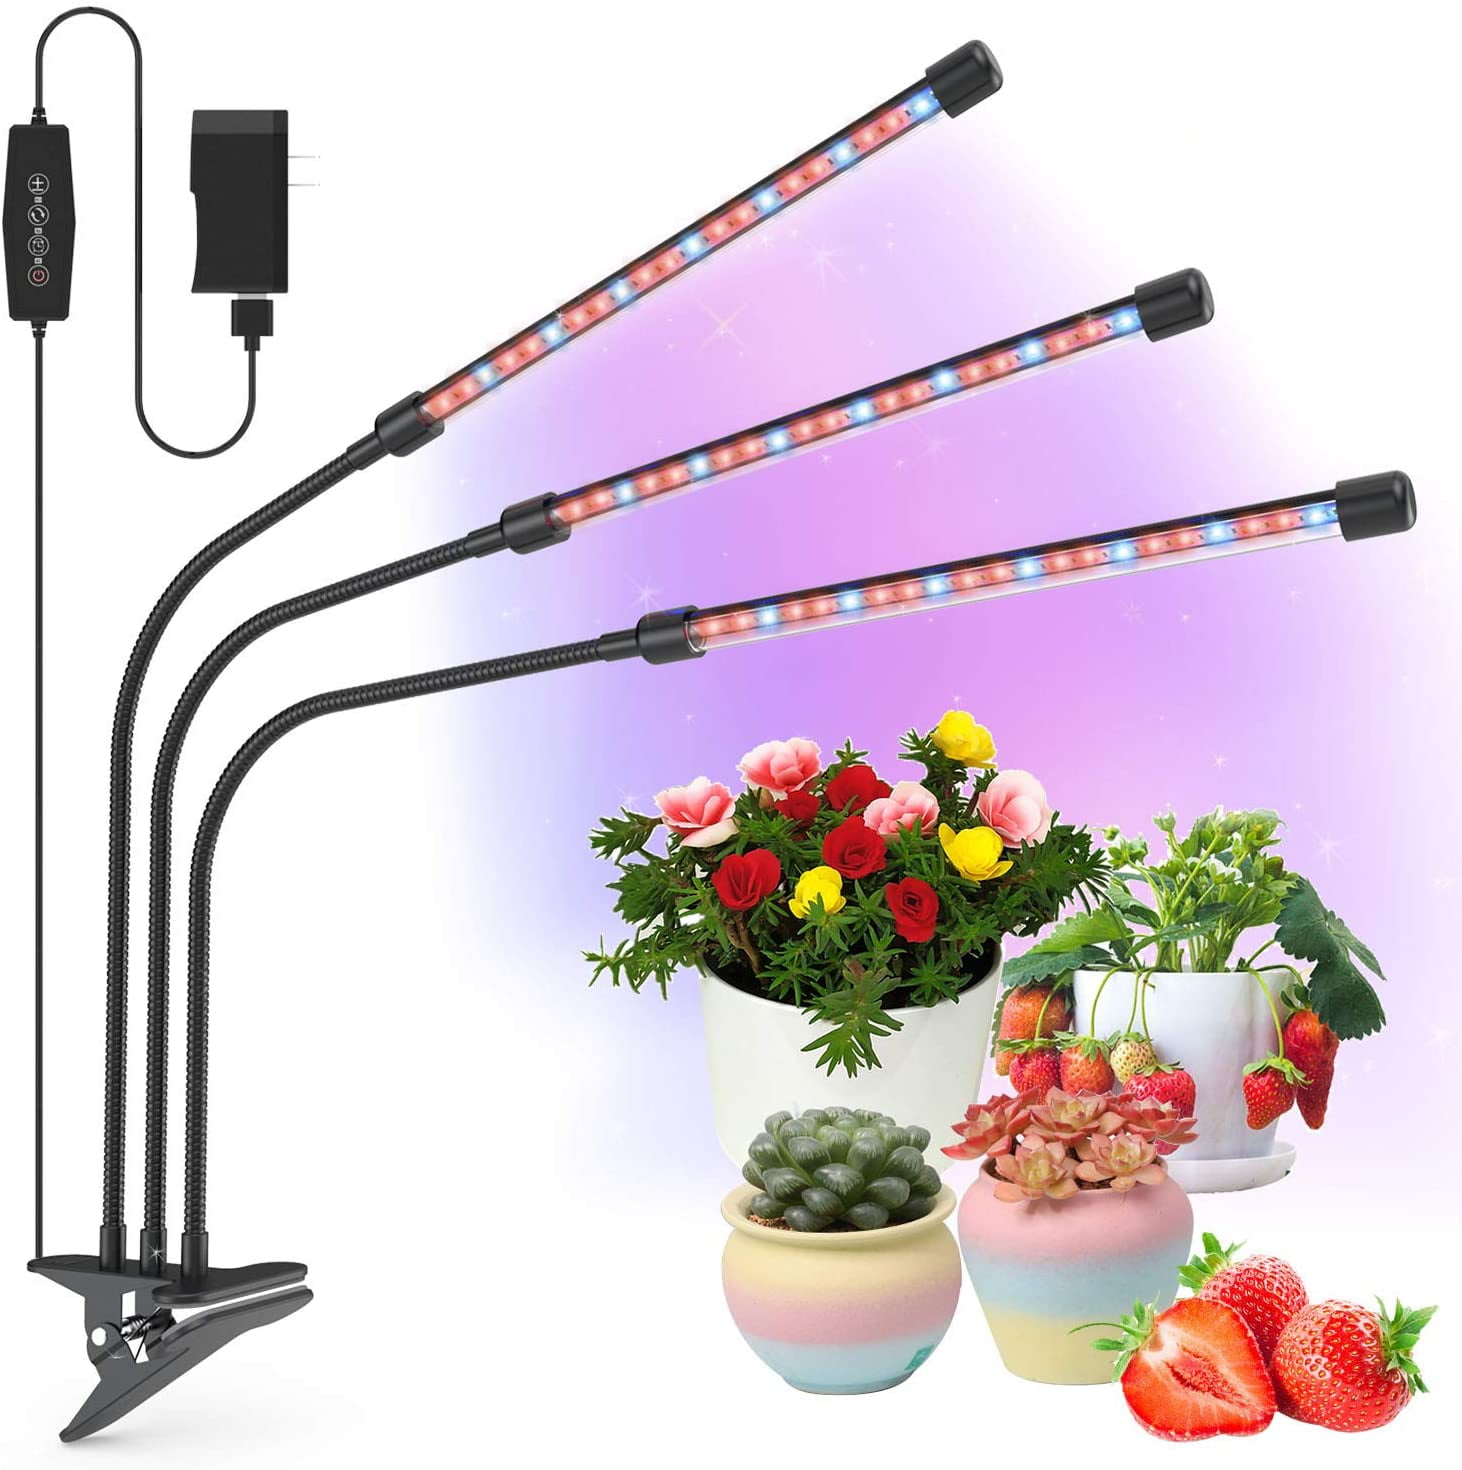 300 Watts Full Spectrum Grow Light Kolem LED Lamp for Indoor Plants Home New 